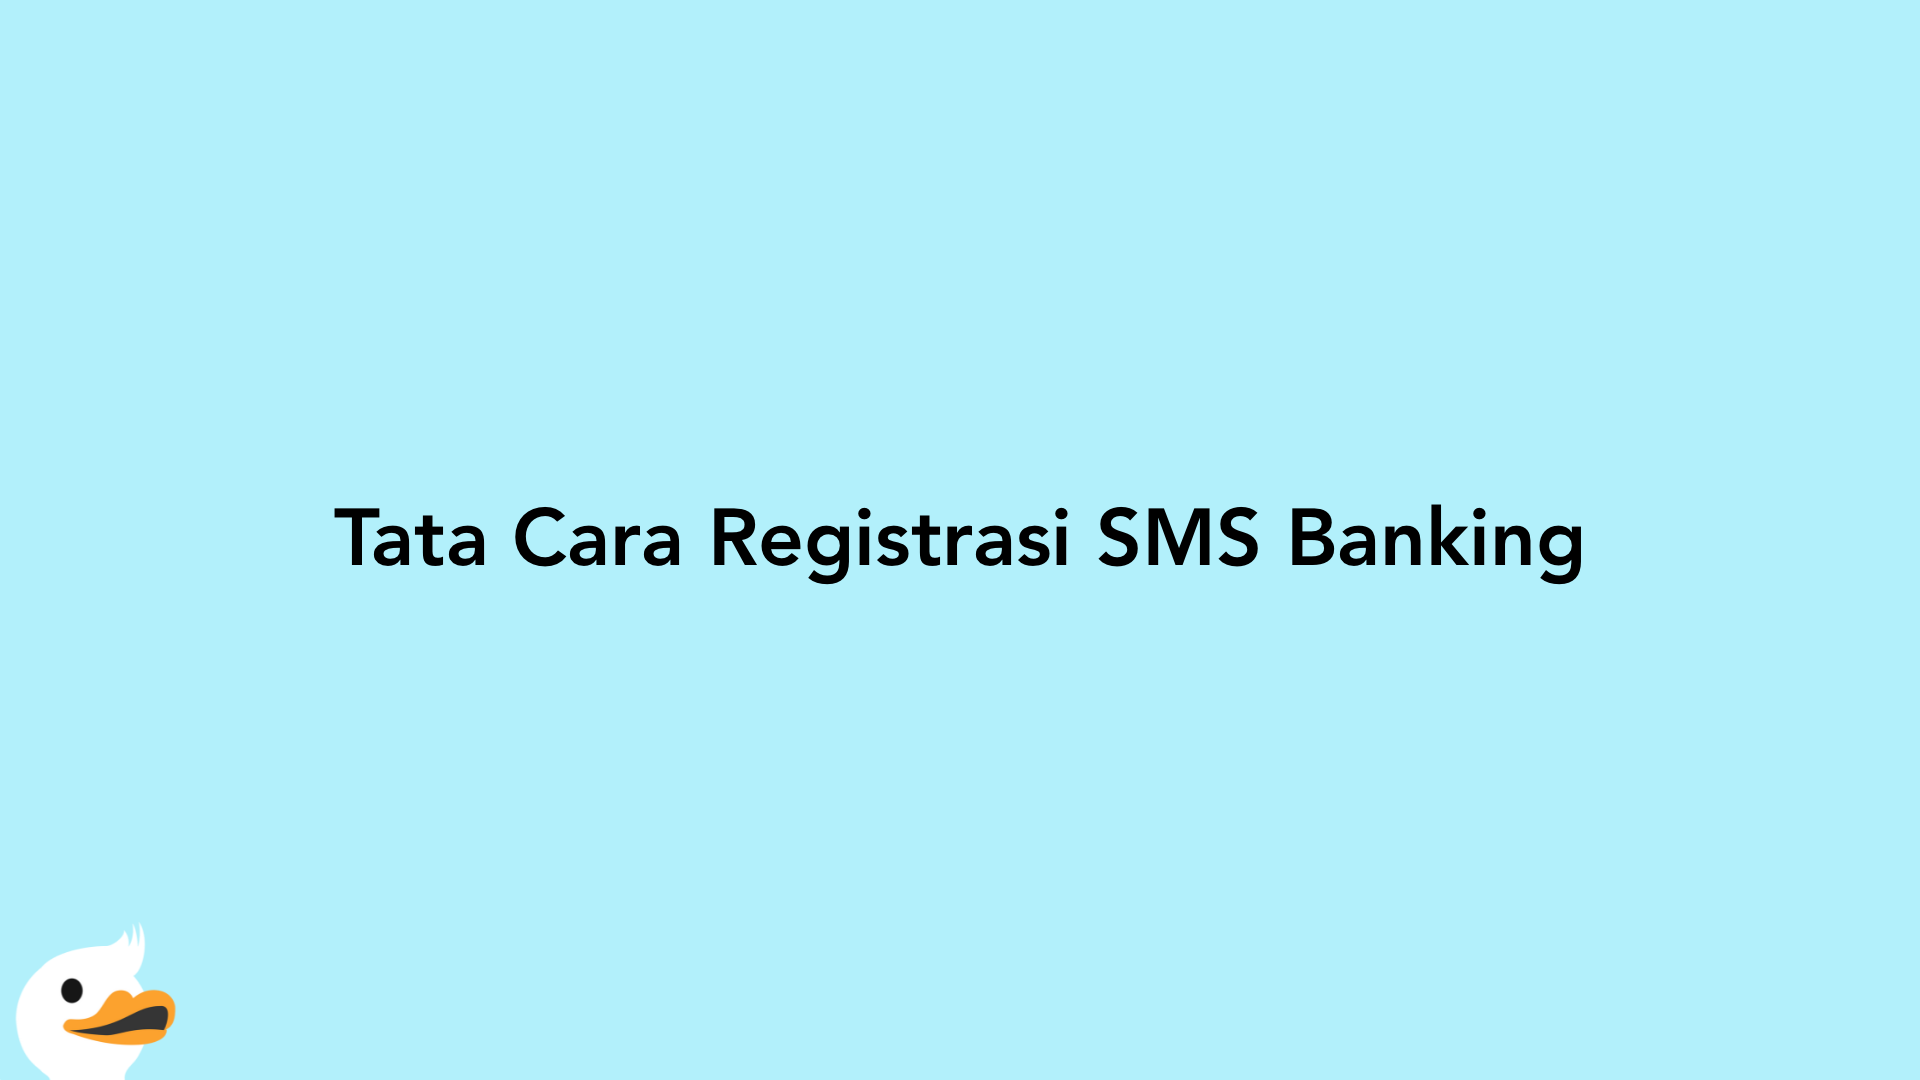 Tata Cara Registrasi SMS Banking